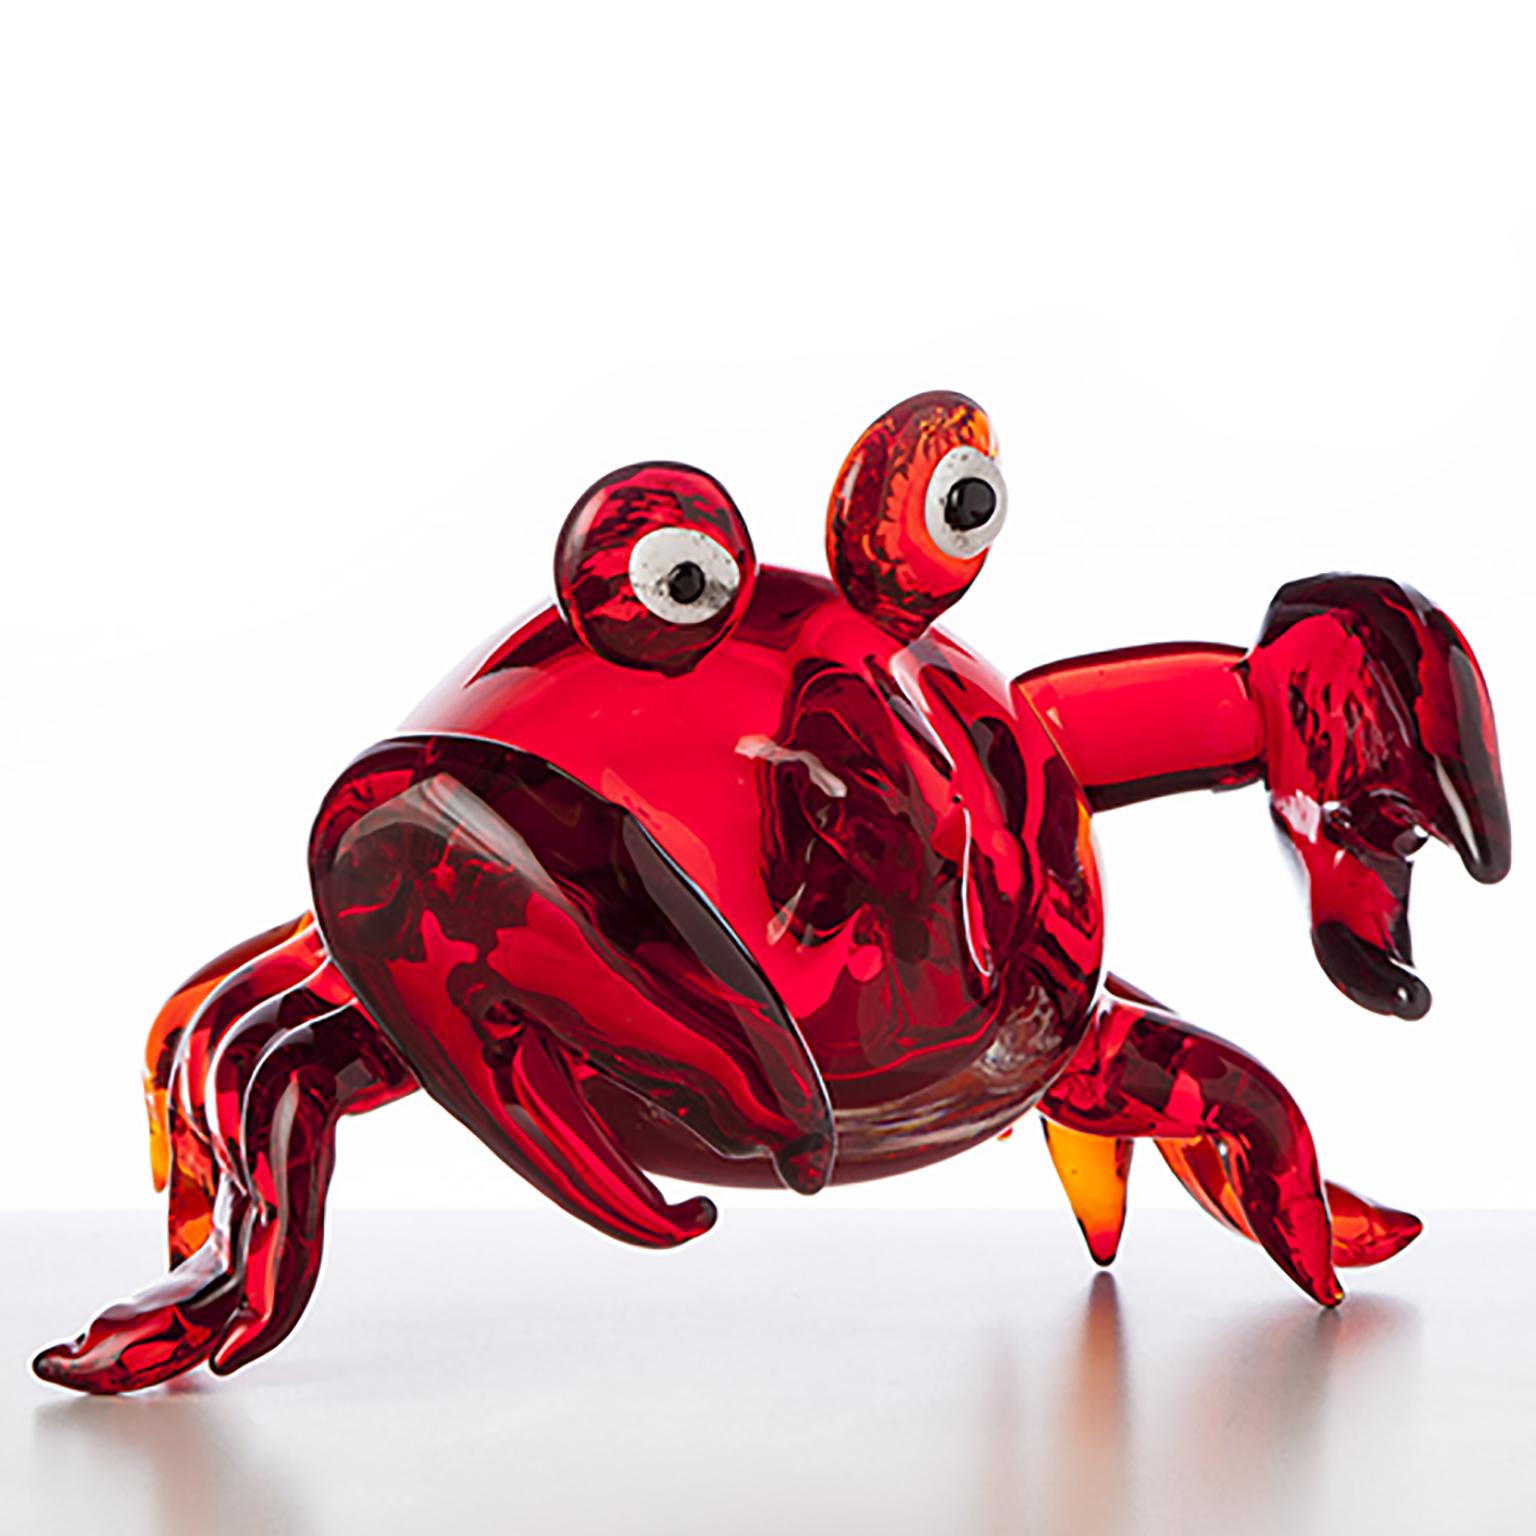 Sandy crabs, ist eine mundgeblasene Pop-Comic-Skulptur aus Murano-Glas von Roberto Beltrami.

Als Teil einer Comic- und Pop-Kollektion aus Murano-Glas sind die 'PUPI' zu 100 % mundgeblasen und vollständig handgefertigt und können auf Wunsch komplett